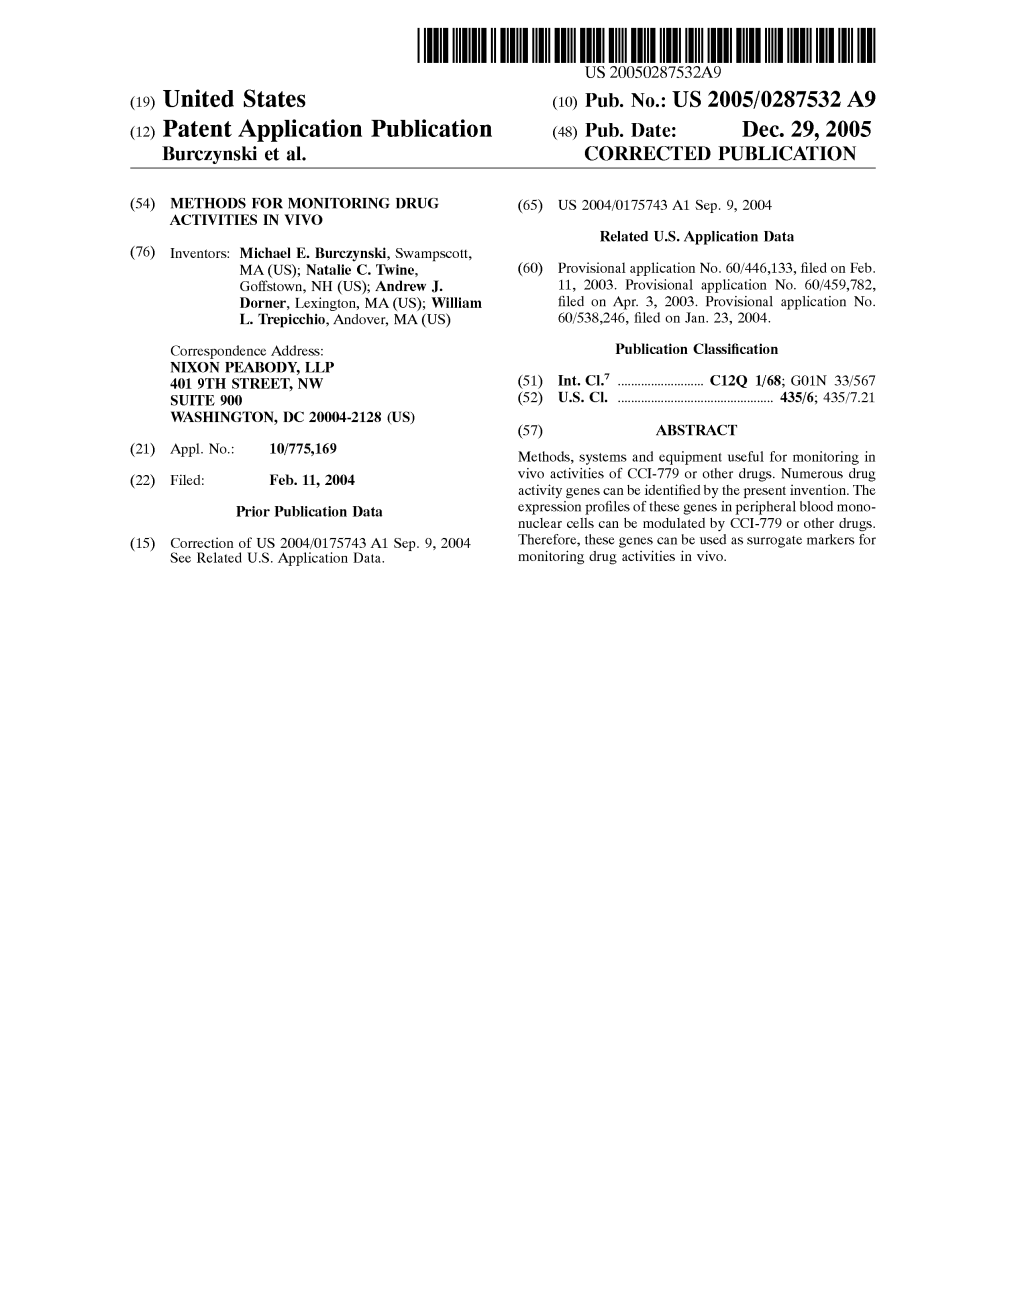 (12) Patent Application Publication (48) Pub. Date: Dec. 29, 2005 Burczynski Et Al